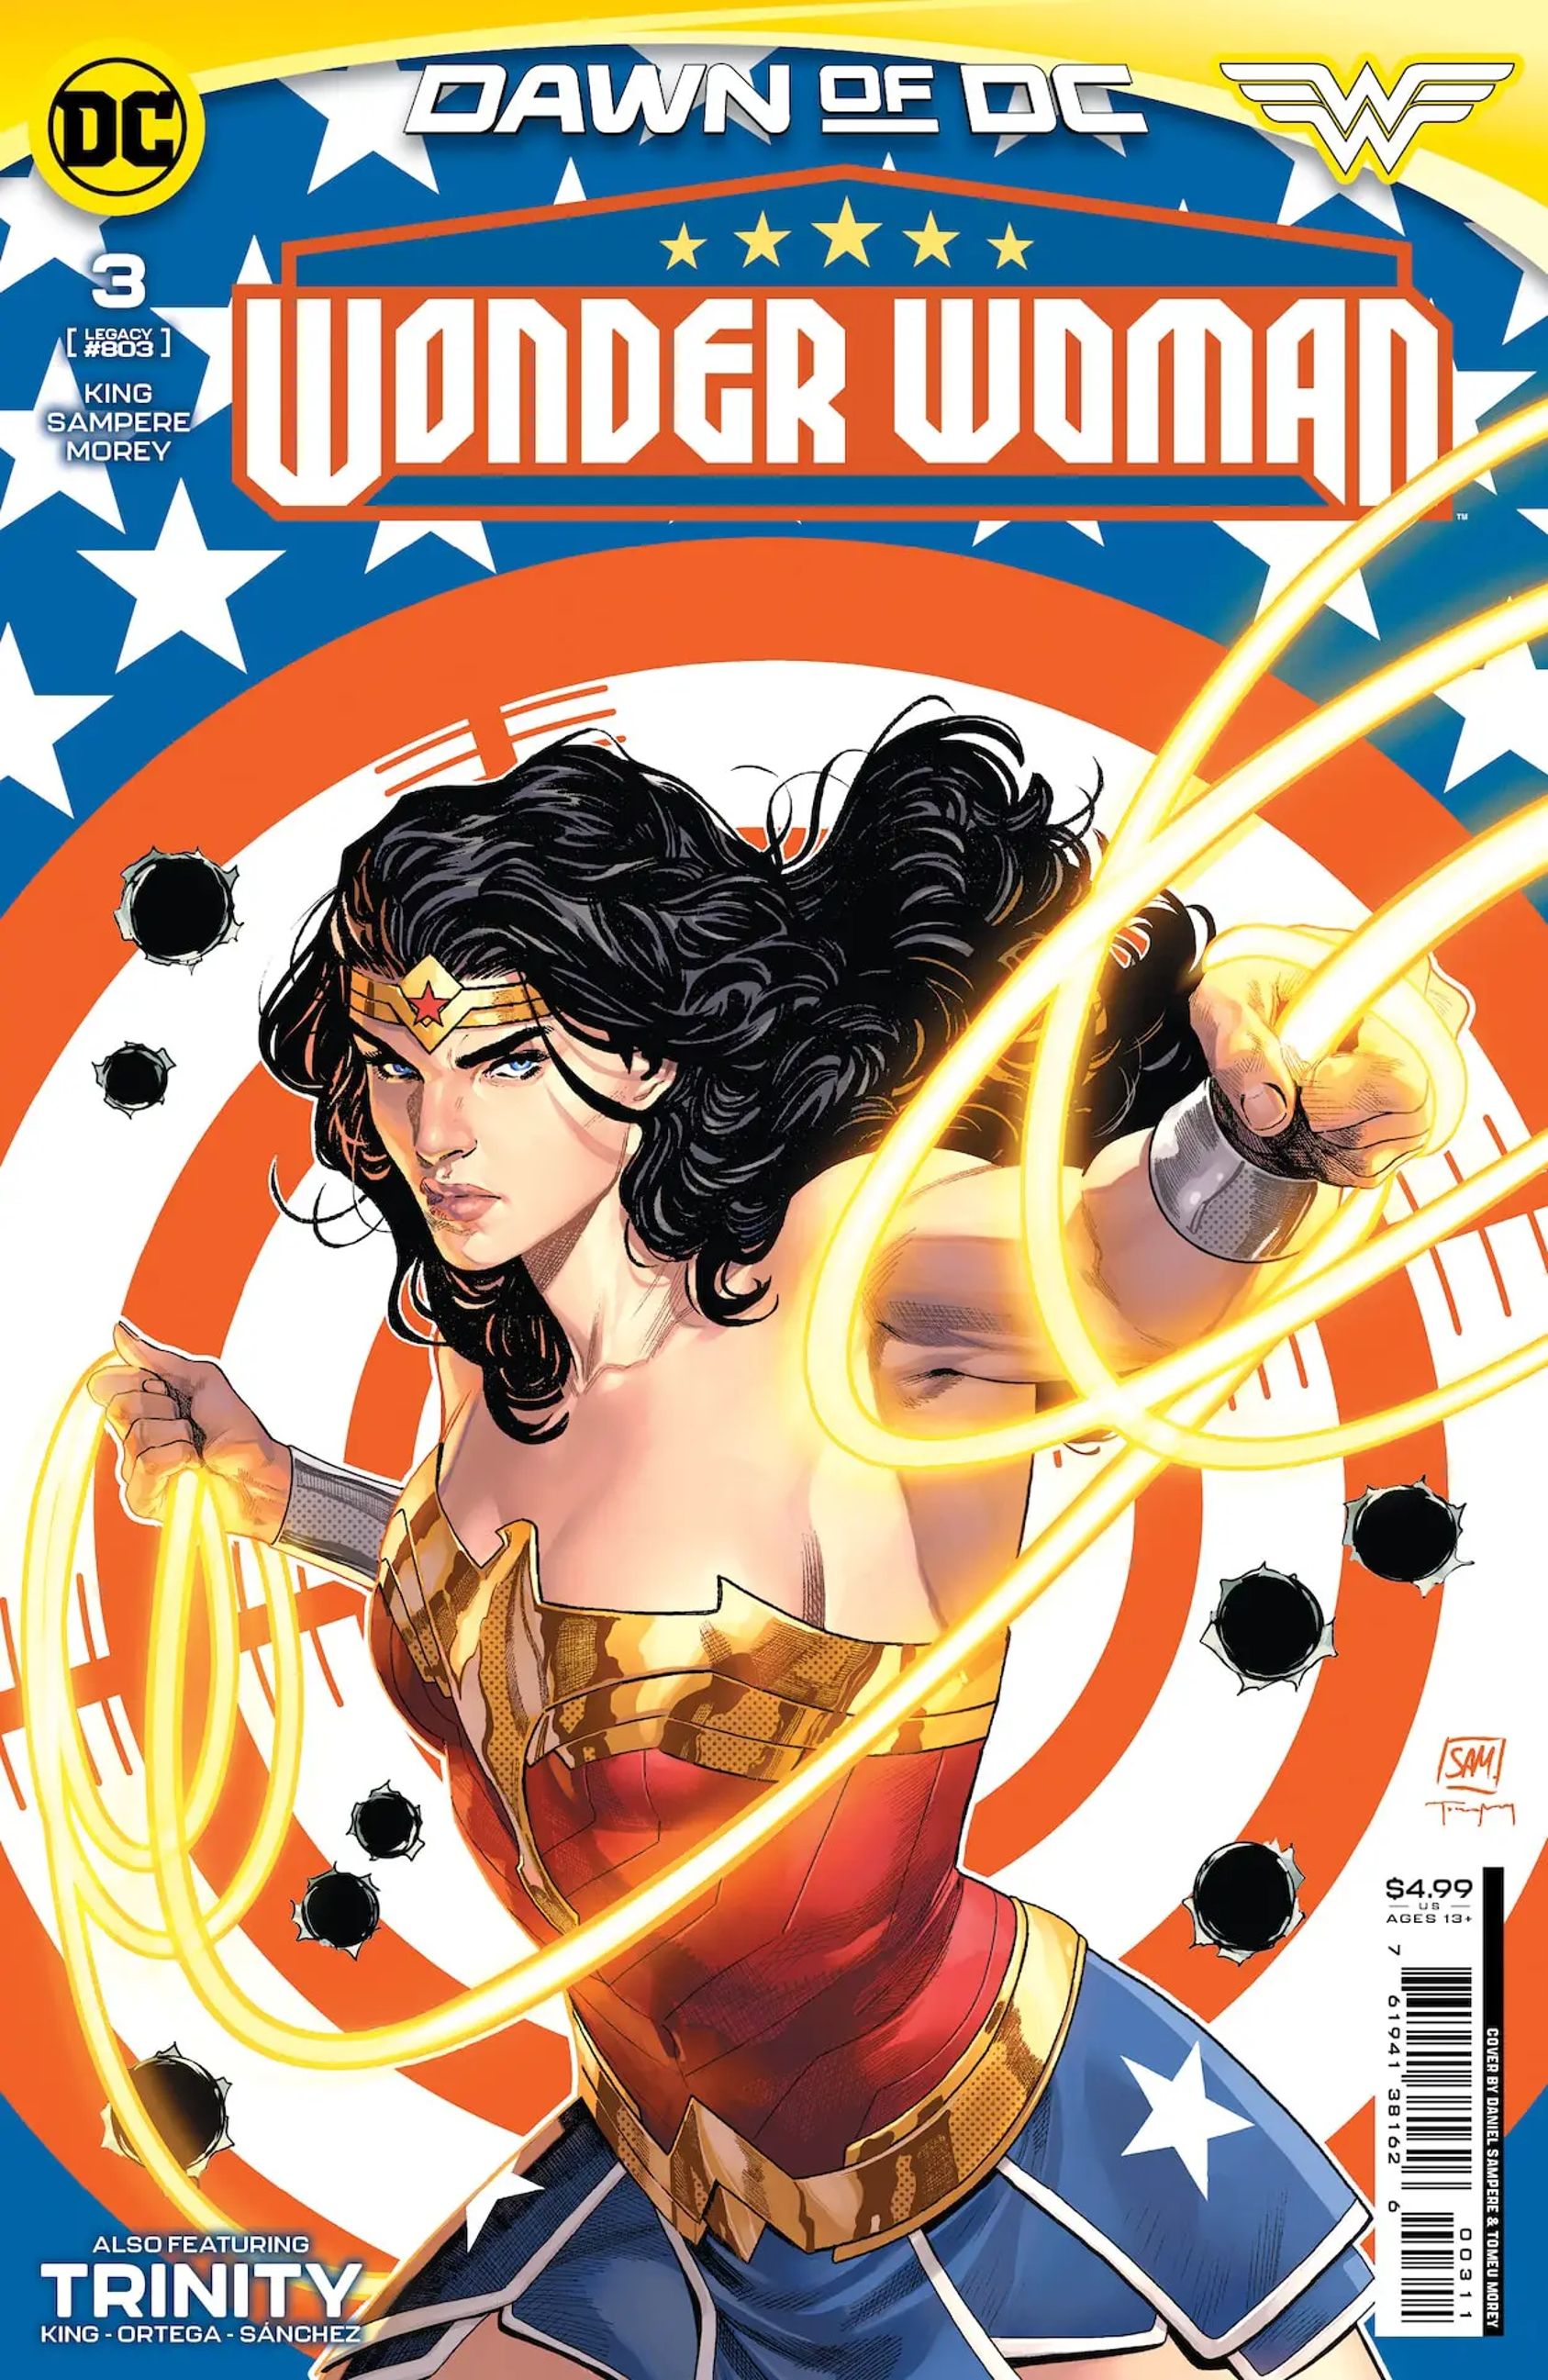 La portada de Wonder Woman 3. Wonder Woman sostiene su lazo frente a un objetivo con agujeros de bala.